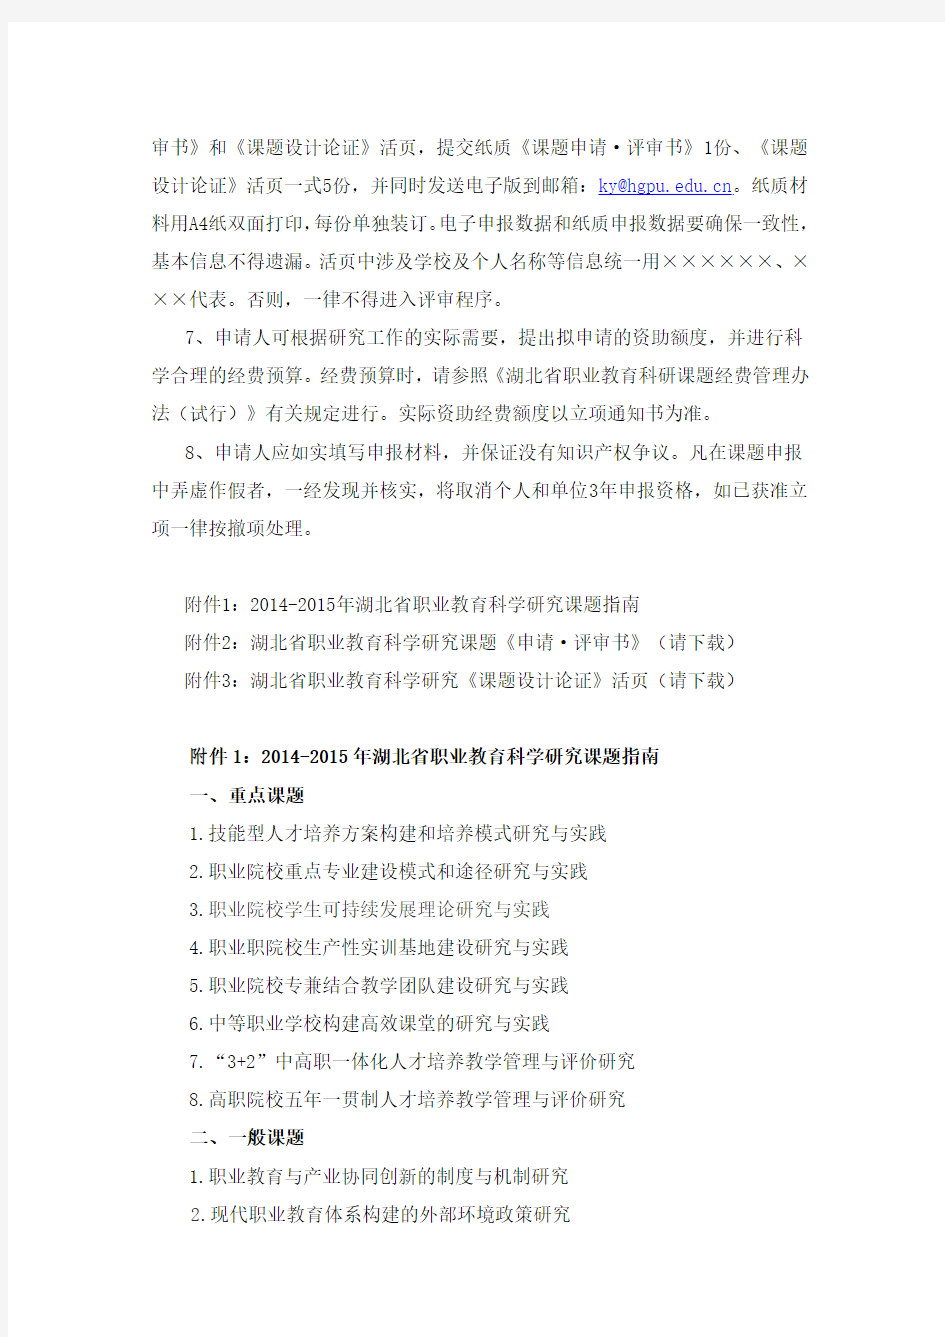 关于组织2014-2015年湖北省职业教育科研课题申报的通知